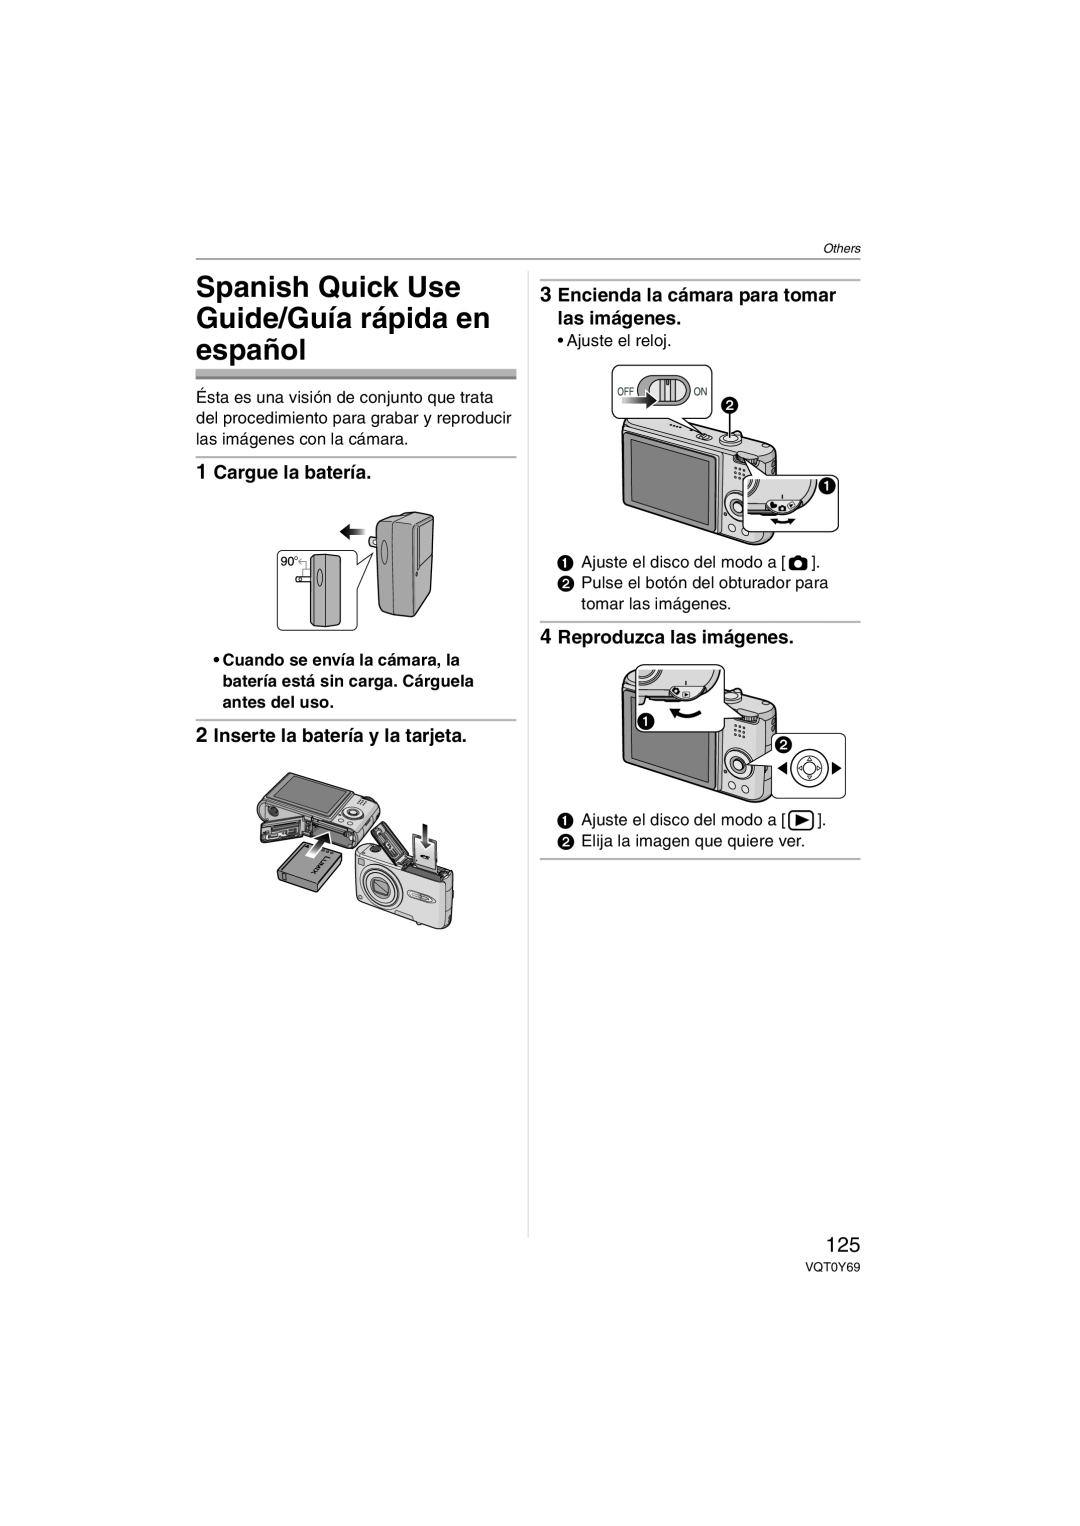 Panasonic DMC-FX3 Spanish Quick Use Guide/Guía rápida en español, Cargue la batería, Inserte la batería y la tarjeta 